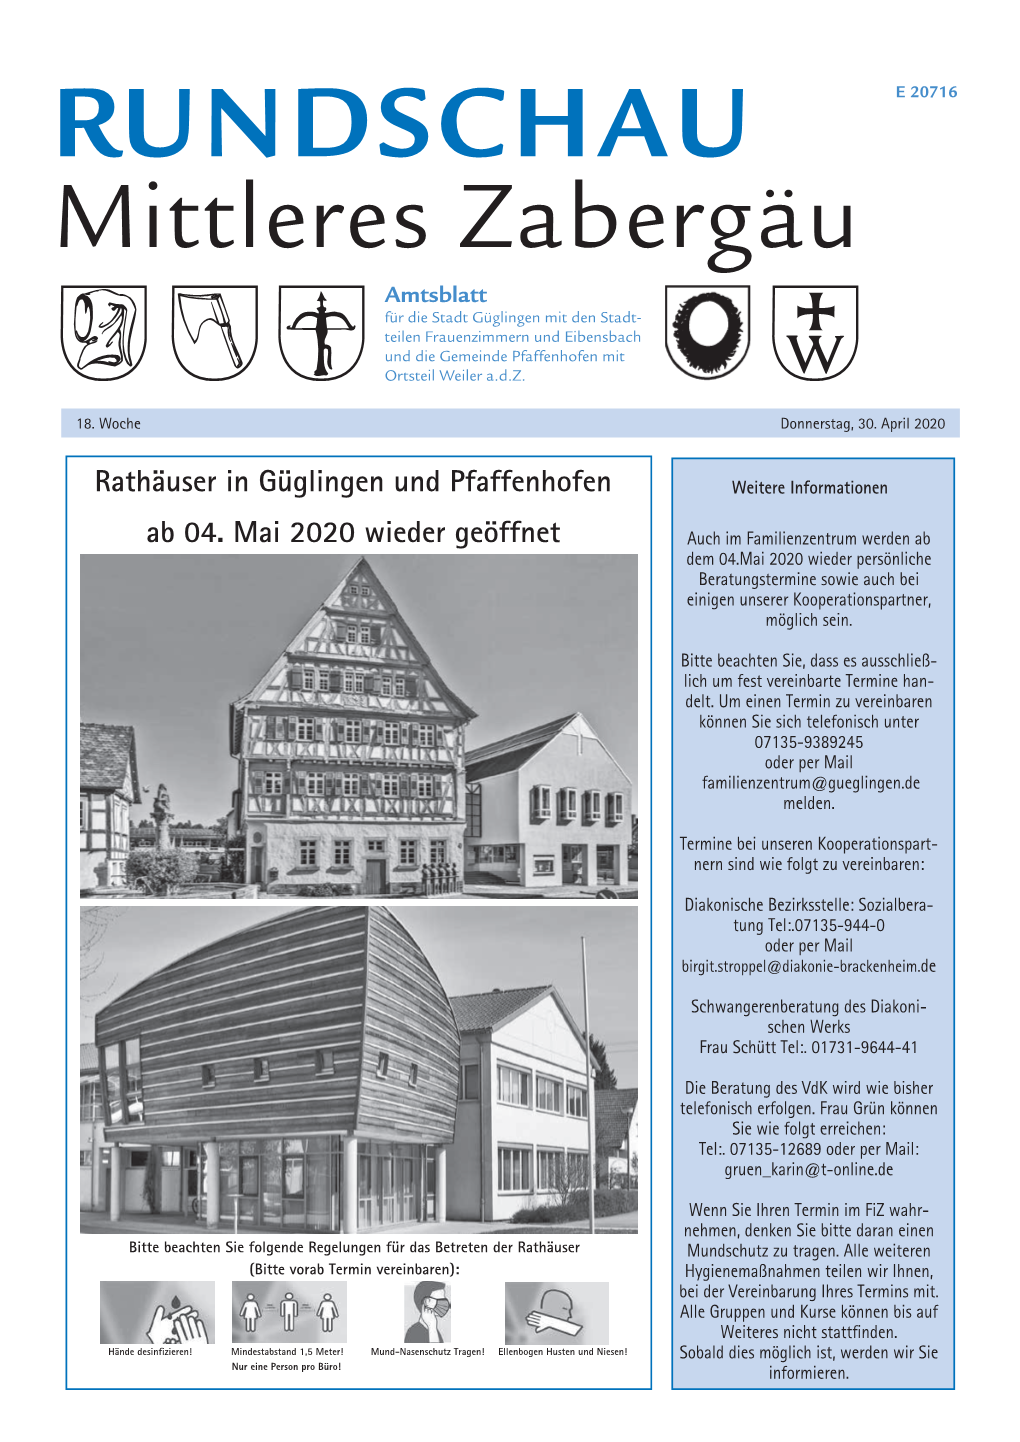 Rathäuser in Güglingen Und Pfaffenhofen Ab 04. Mai 2020